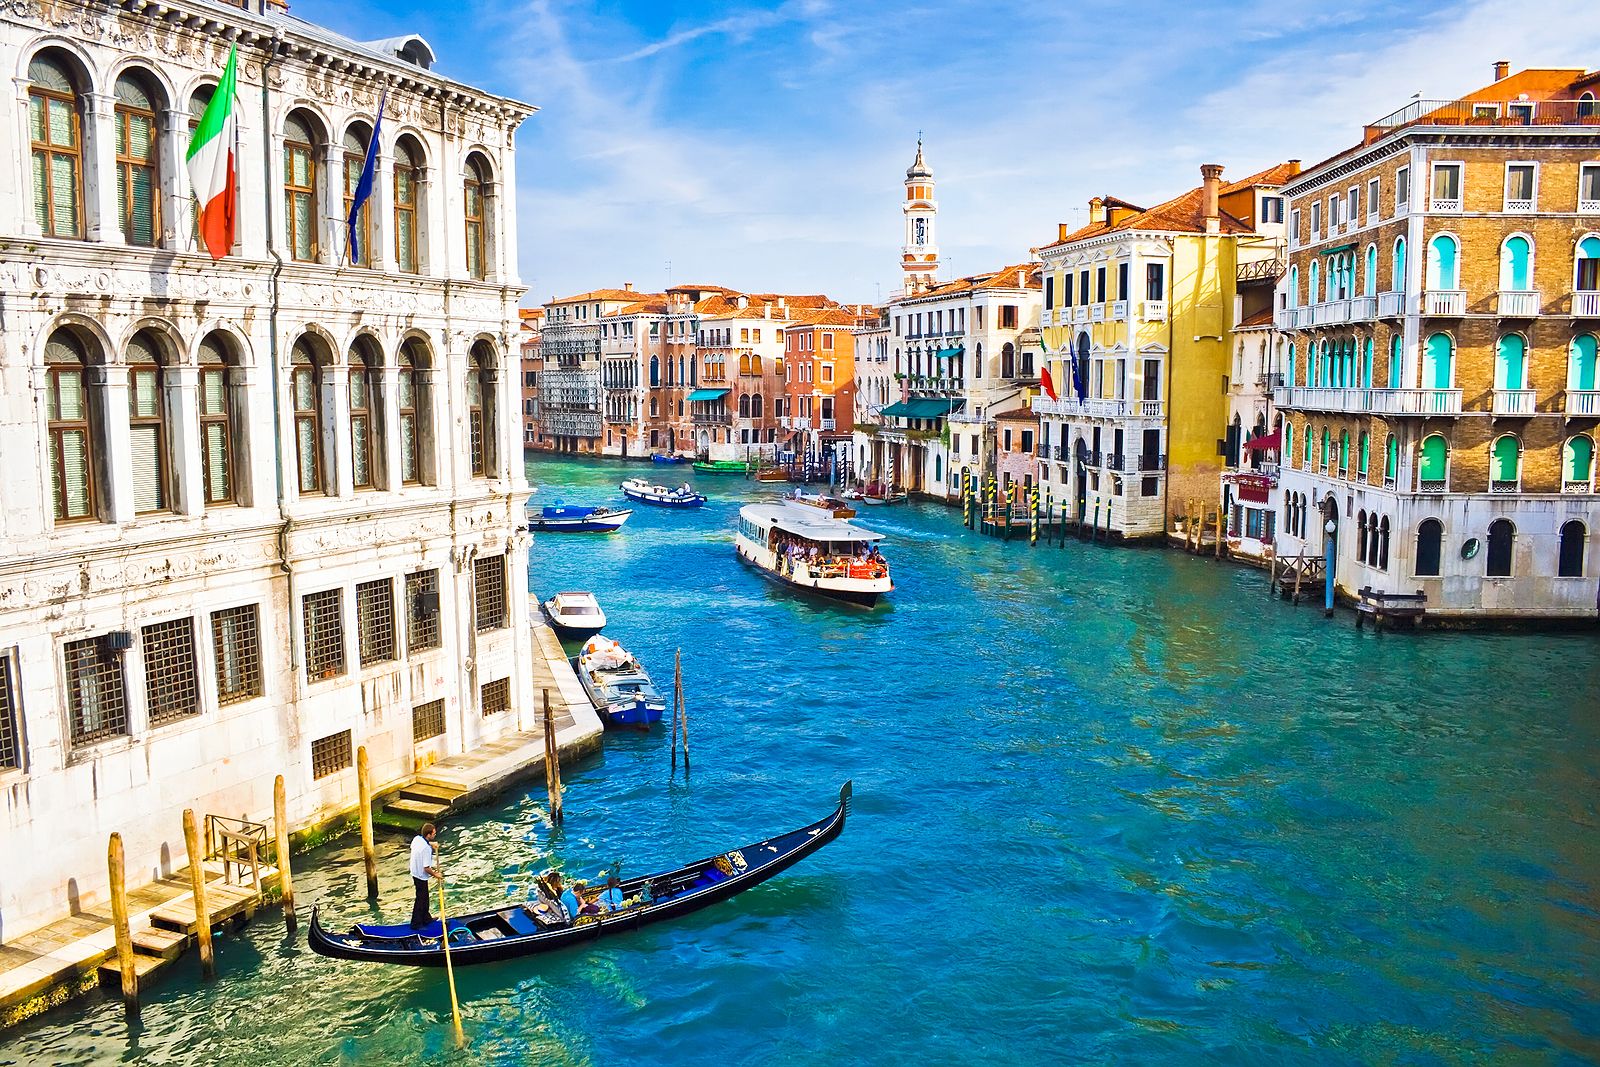 Venecia comienza a cobrar 5 euros a los turistas por entrar a su centro histórico